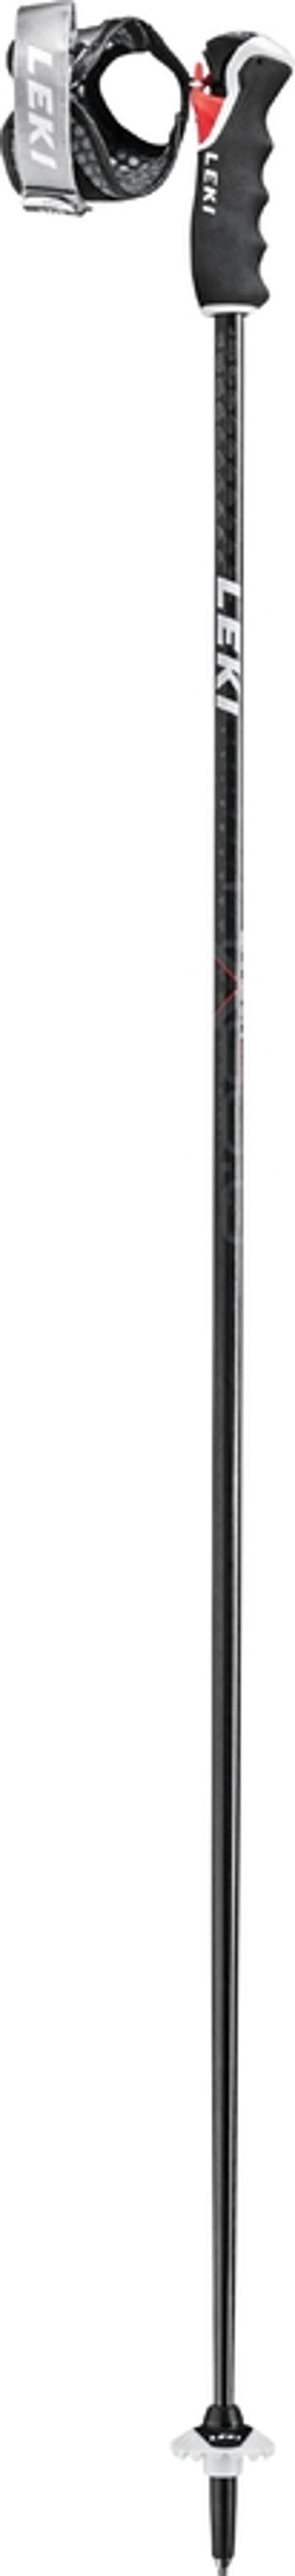 Stâlpi de coborâre Leki Carbon HX 3D negru-alb-întunecat-tracit 65068011